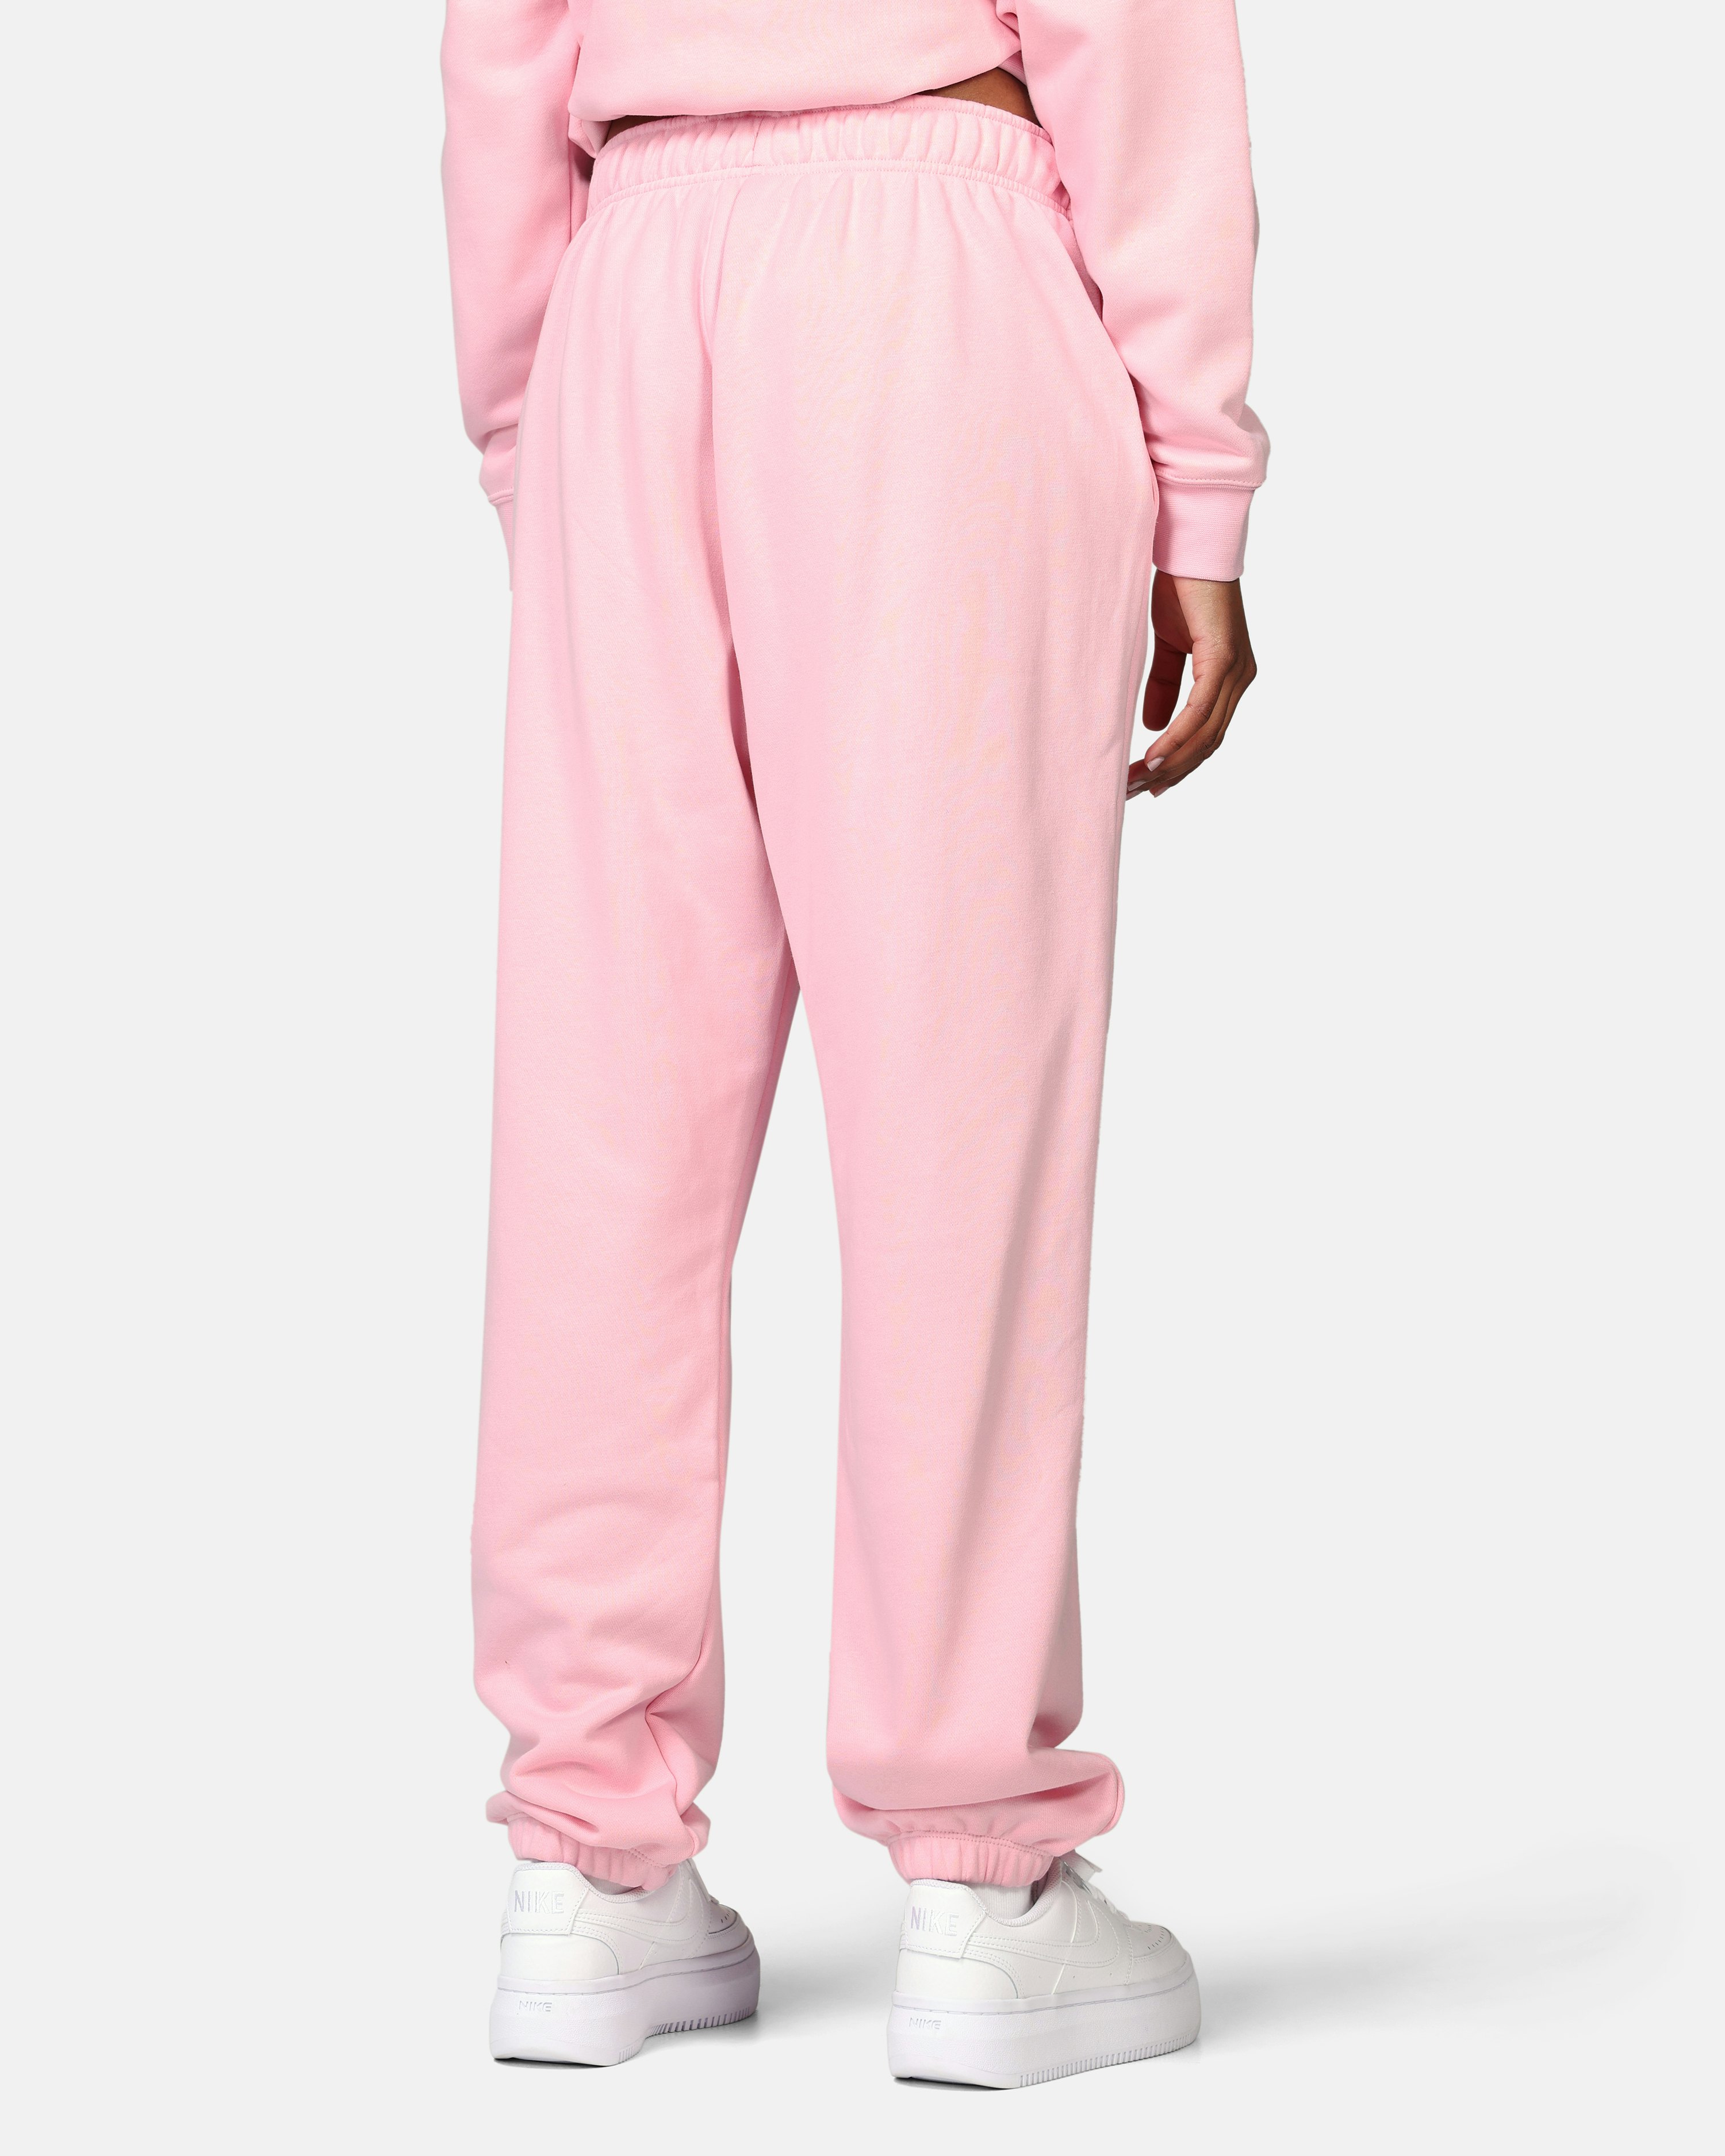 Stylish Nike Pink Gym Sweatpants